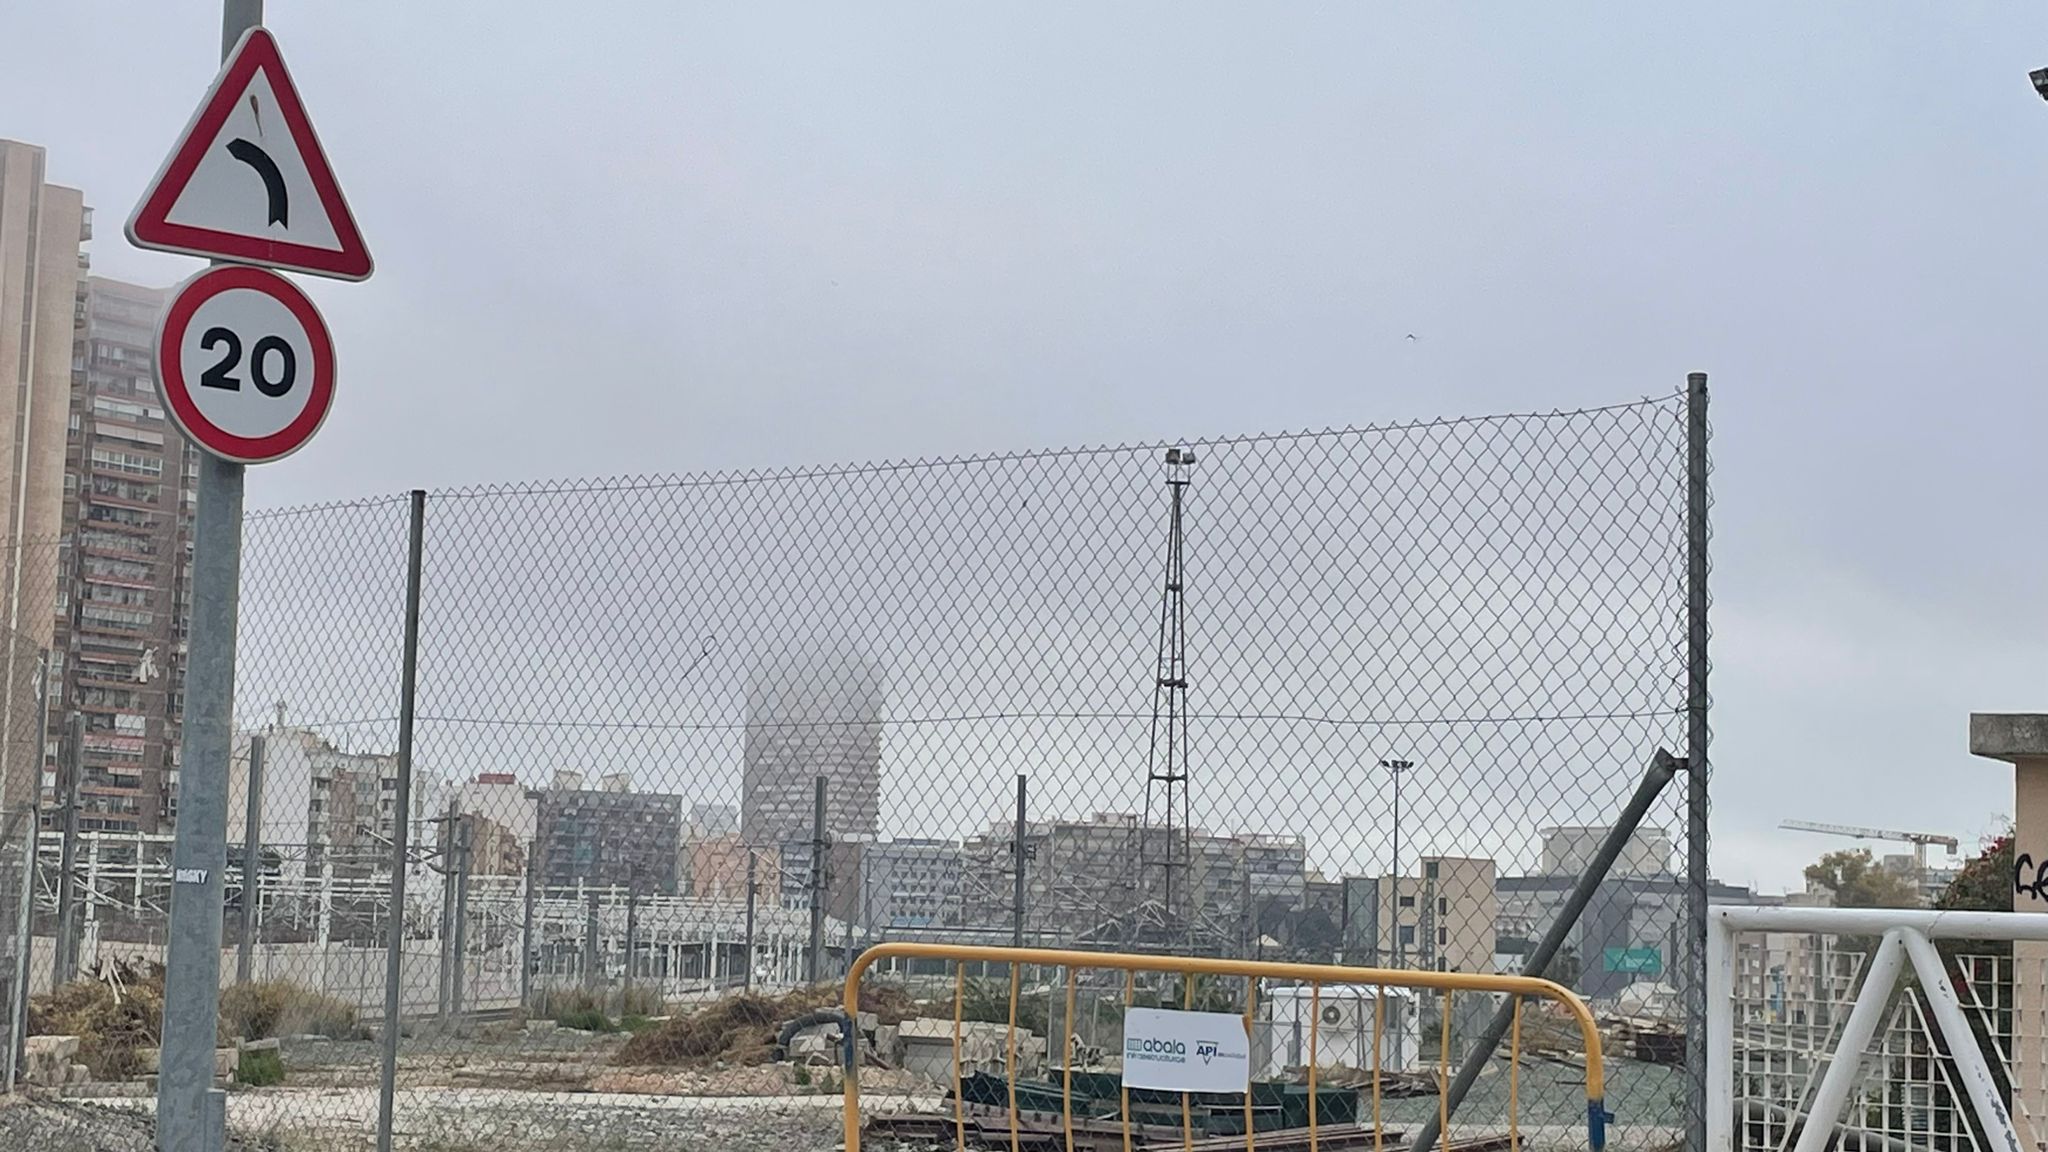 El Estudiohotel Alicante engullido por la niebla.